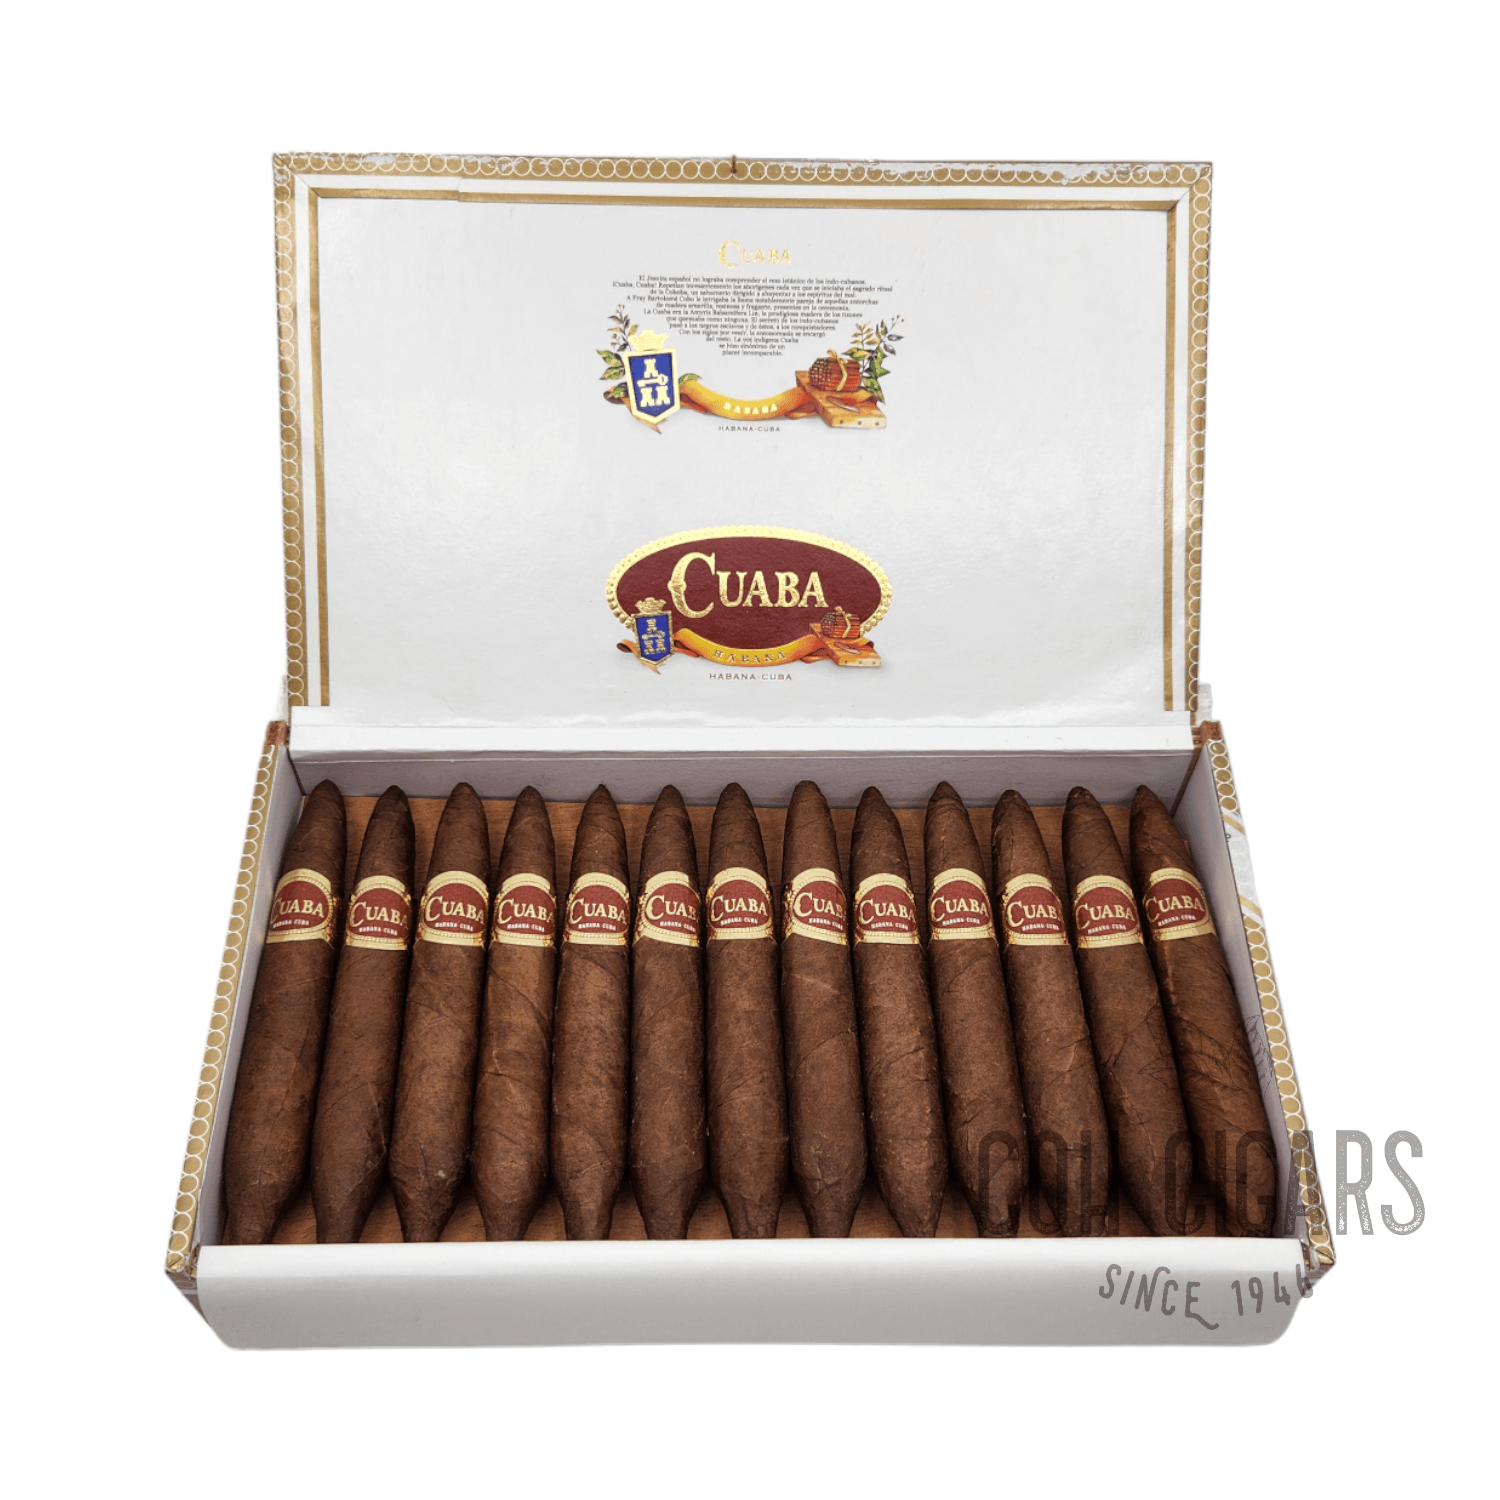 Cuaba Cigar | Tradicionales | Box 25 - hk.cohcigars